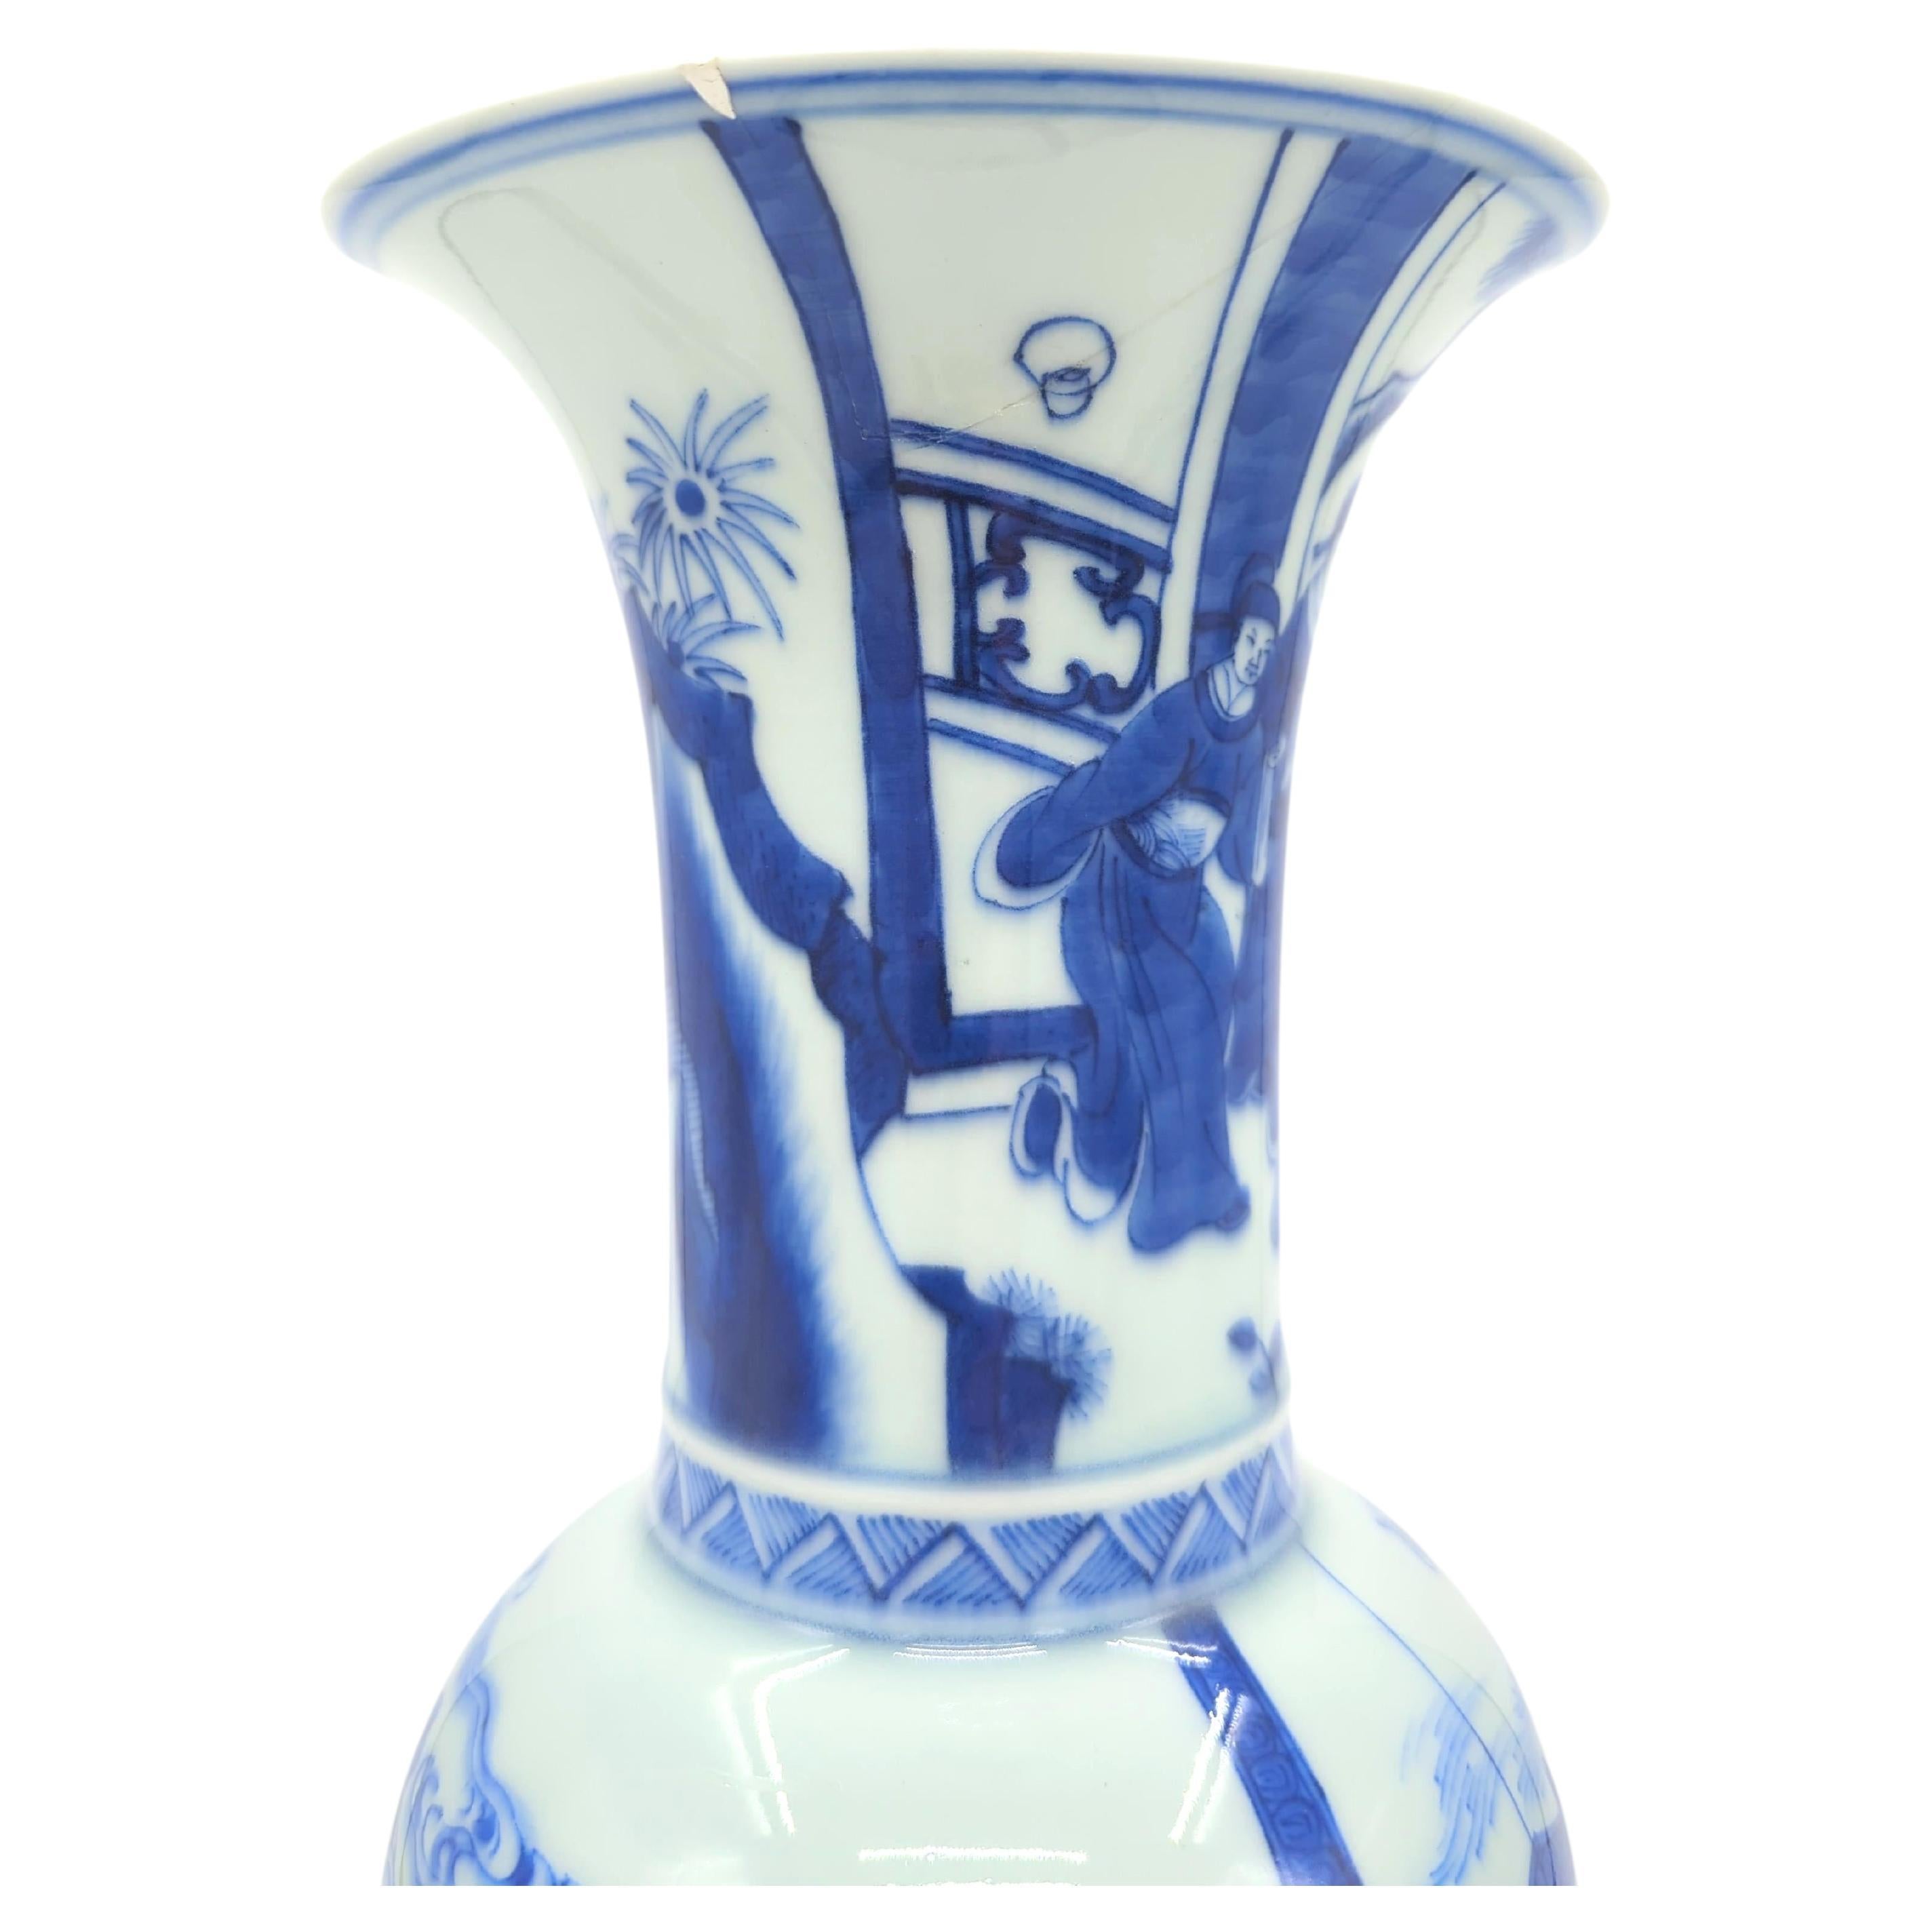 Ce vase Gu, datant de la fin de la période Qing au début de la période Rever, témoigne de la pérennité de l'art de la porcelaine bleue et blanche chinoise, dans le style Kangxi. Le vase est magistralement peint avec des personnages en tenue